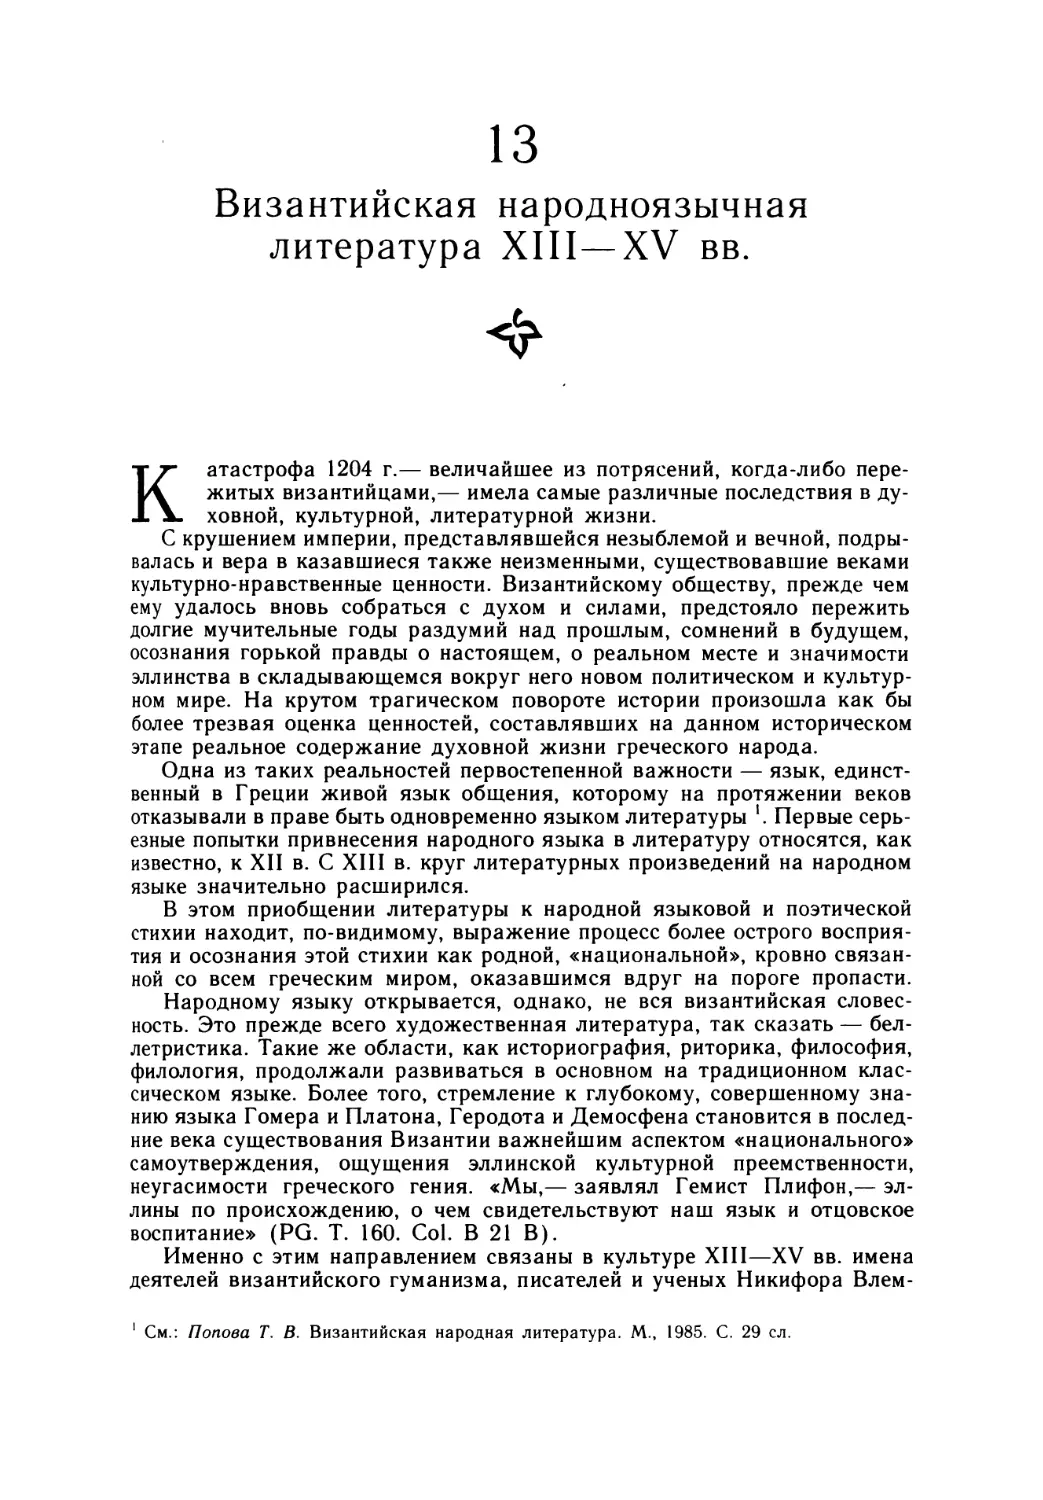 13. Византийская народноязычная литература XIII—XV вв.